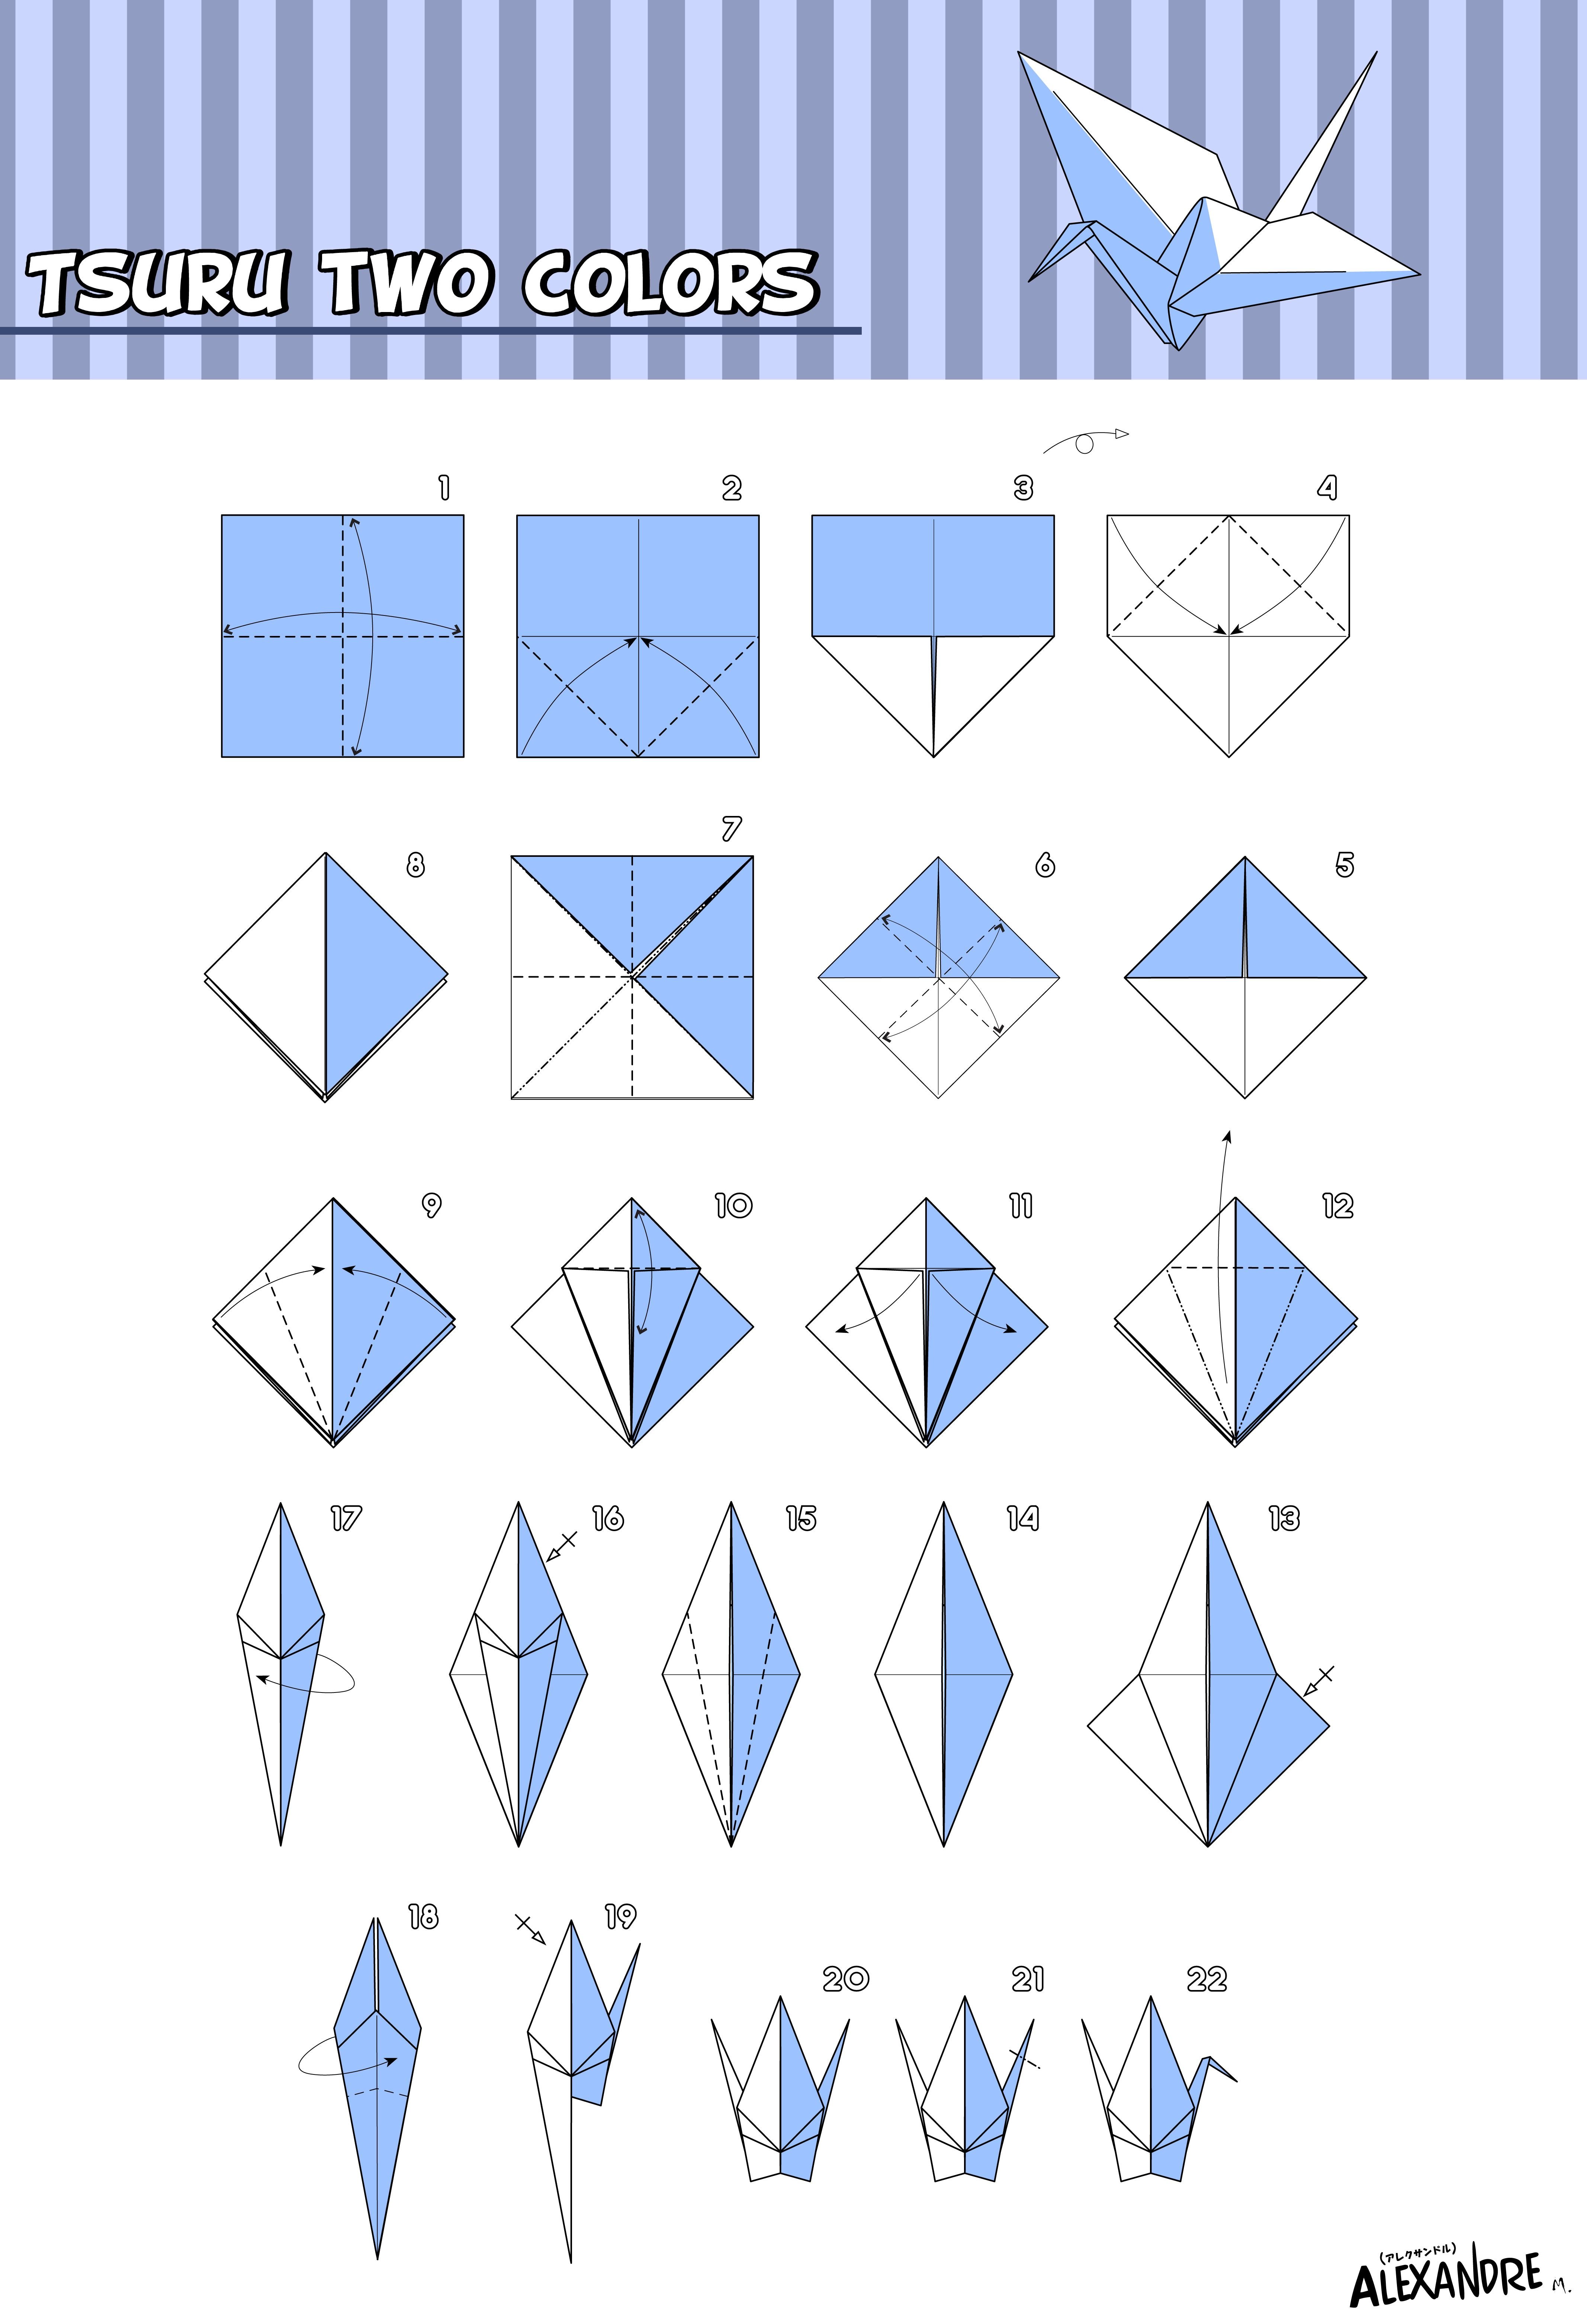 Оригами журавль простой. Как сложить журавля из бумаги пошагово. Оригами из бумаги для начинающих Журавлик. Схема как сложить журавлика из бумаги. Журавлик Цуру оригами схема.